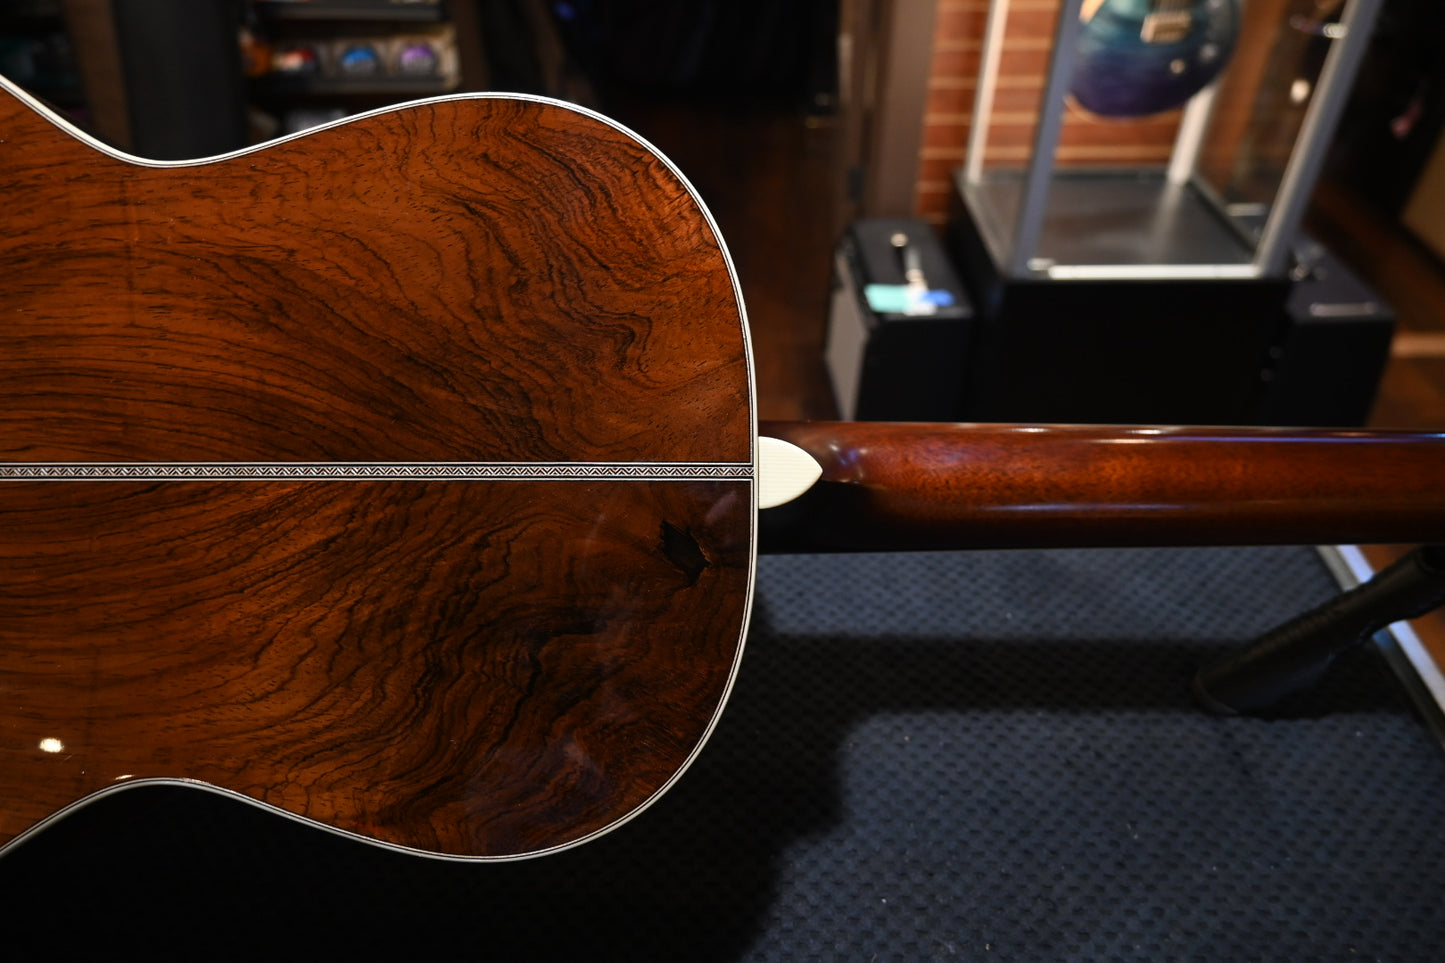 Santa Cruz Style 1 2014 Brazilian Rosewood Guitar #074 PRE-OWNED - Danville Music